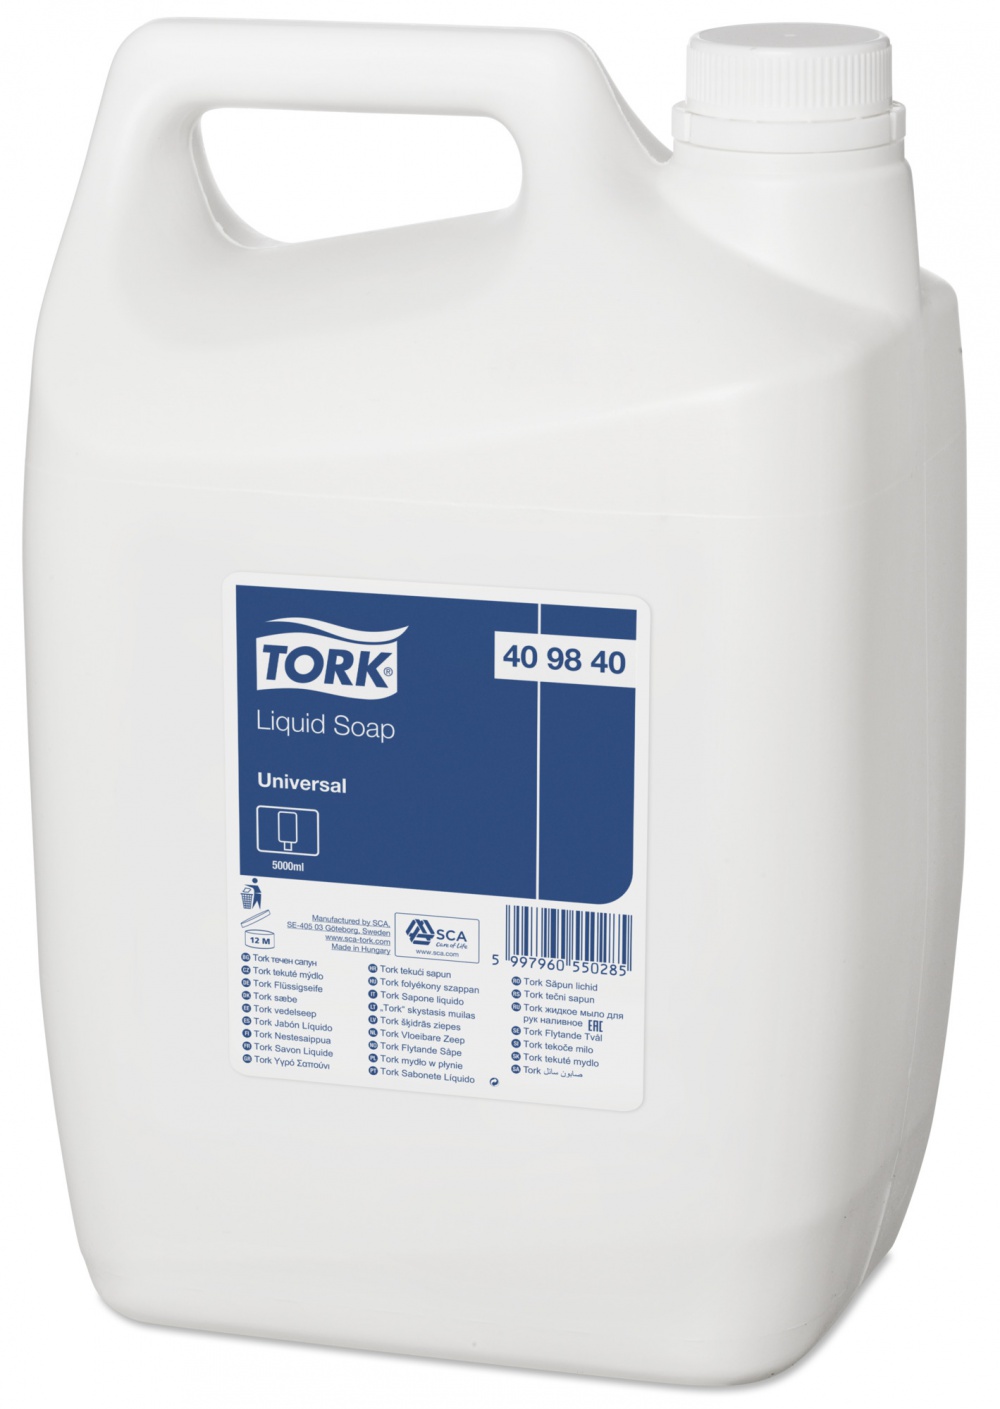 Жидкое мыло - крем  Tork Universal (409840), 5 л